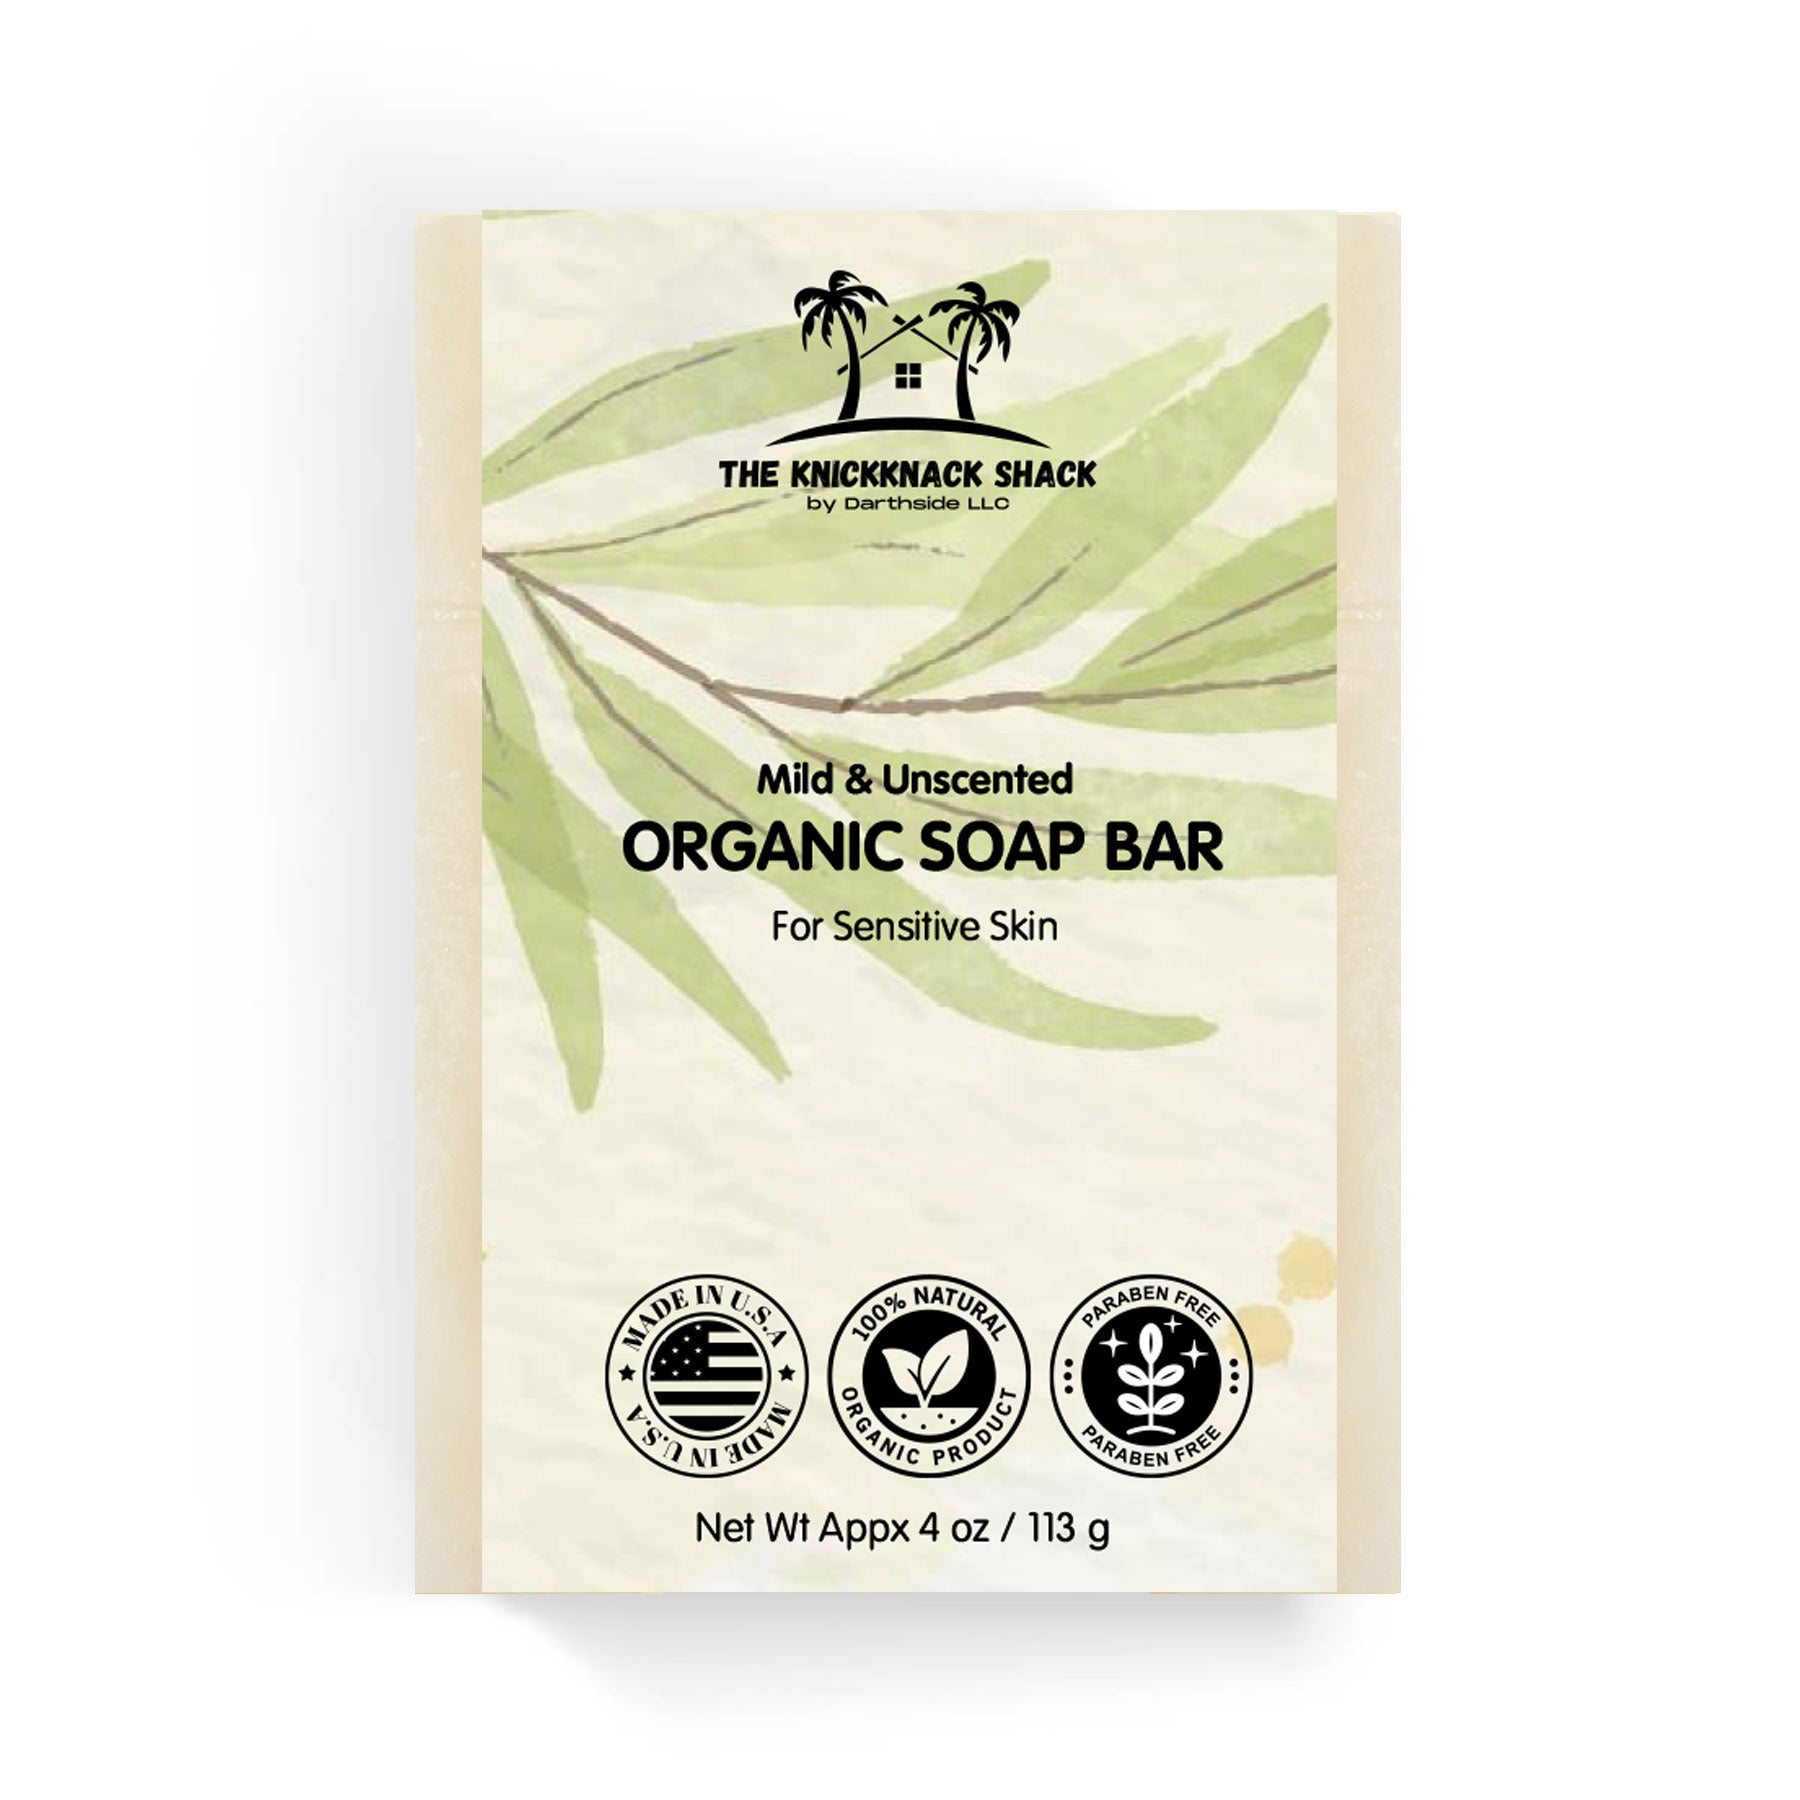 Mild & Unscented Organic Soap Bar for Sensitive Skin